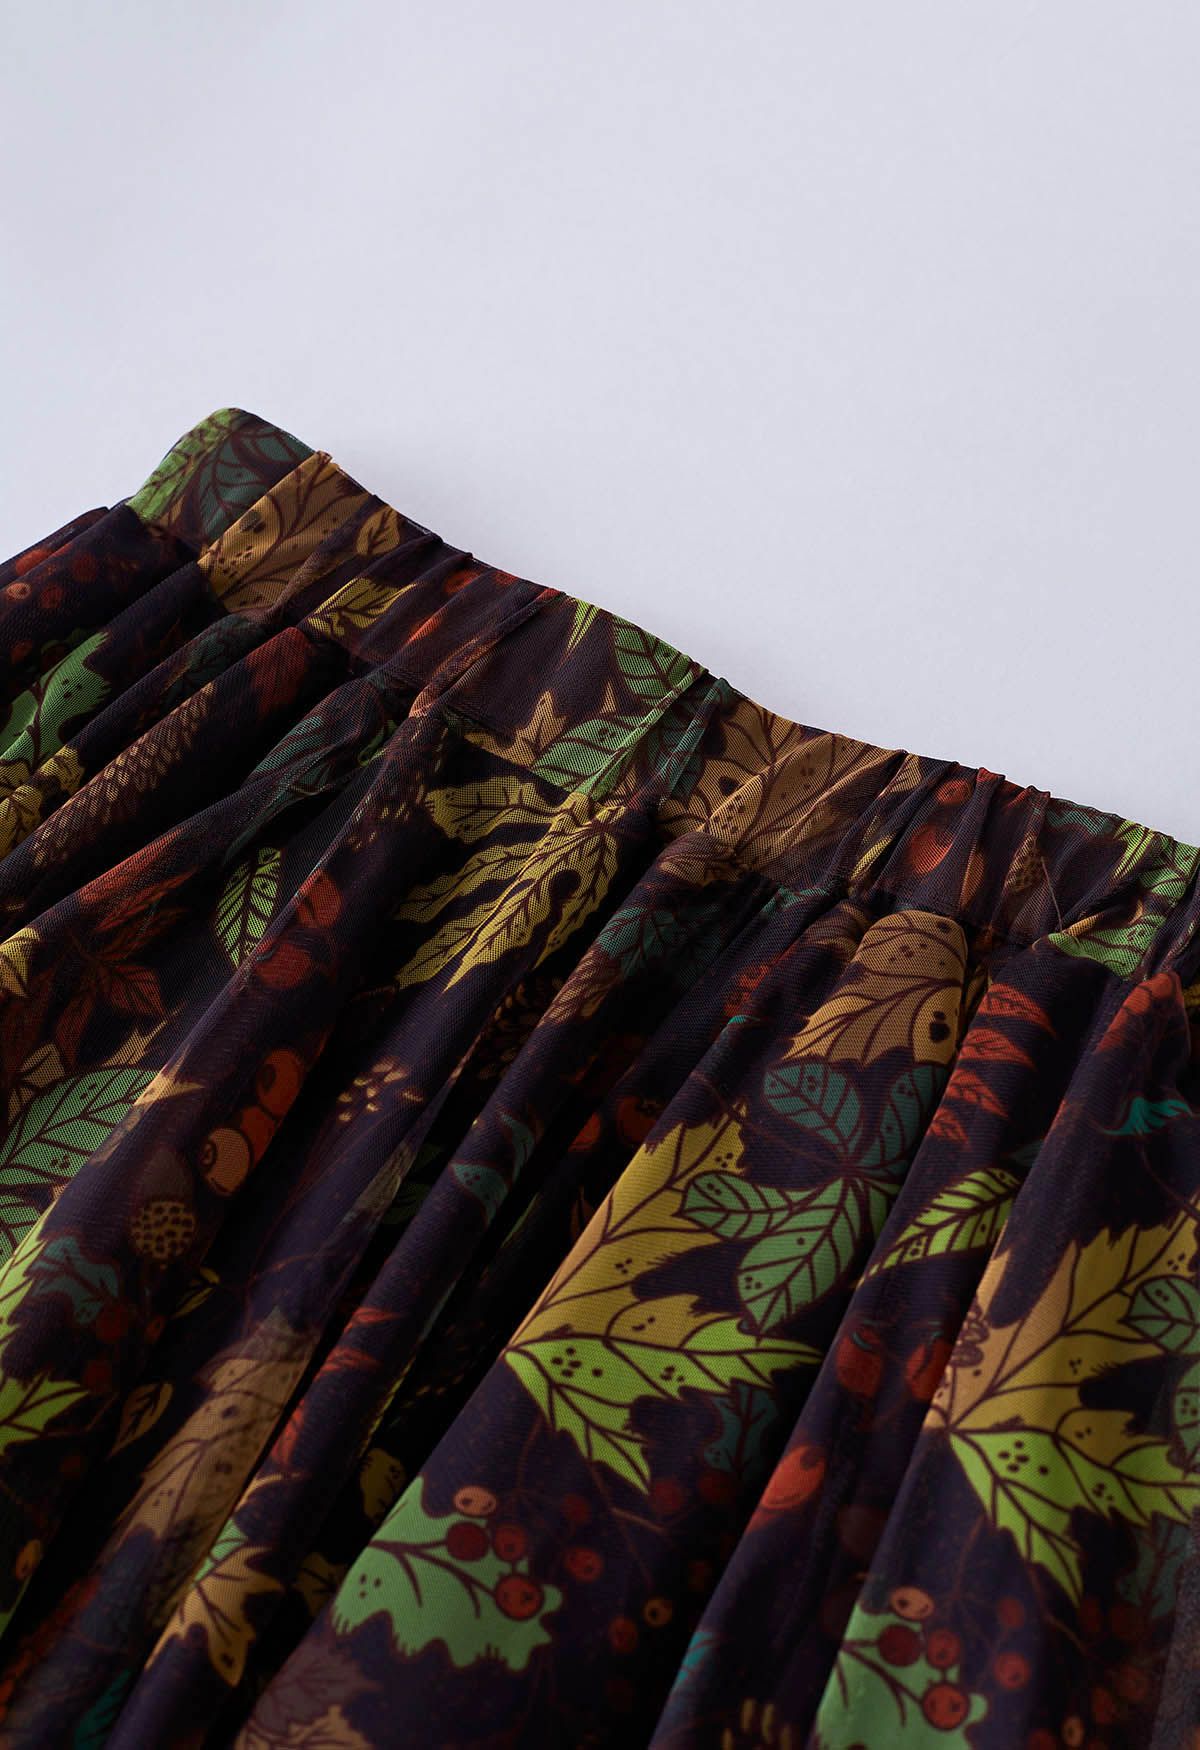 Fall-Inspired Mesh Tulle Midi Skirt